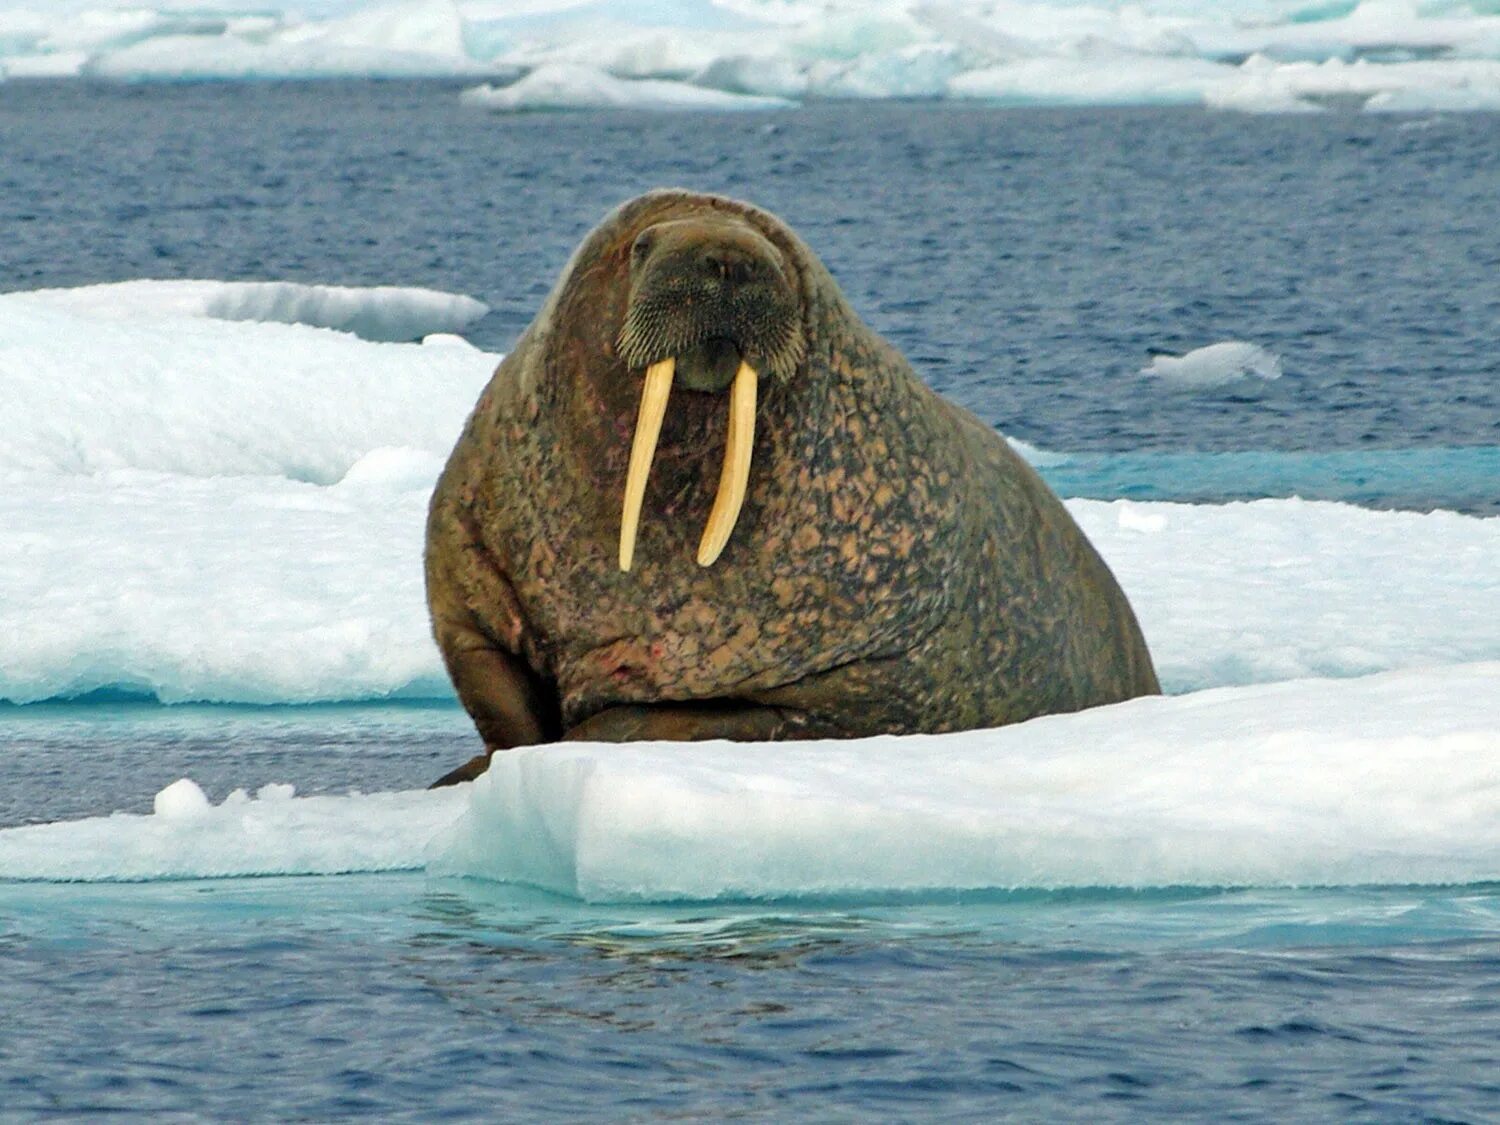 Ice animals. Морж в Арктике Арктика. Антарктида морж. Ластоногие моржи. Северный полюс морж.